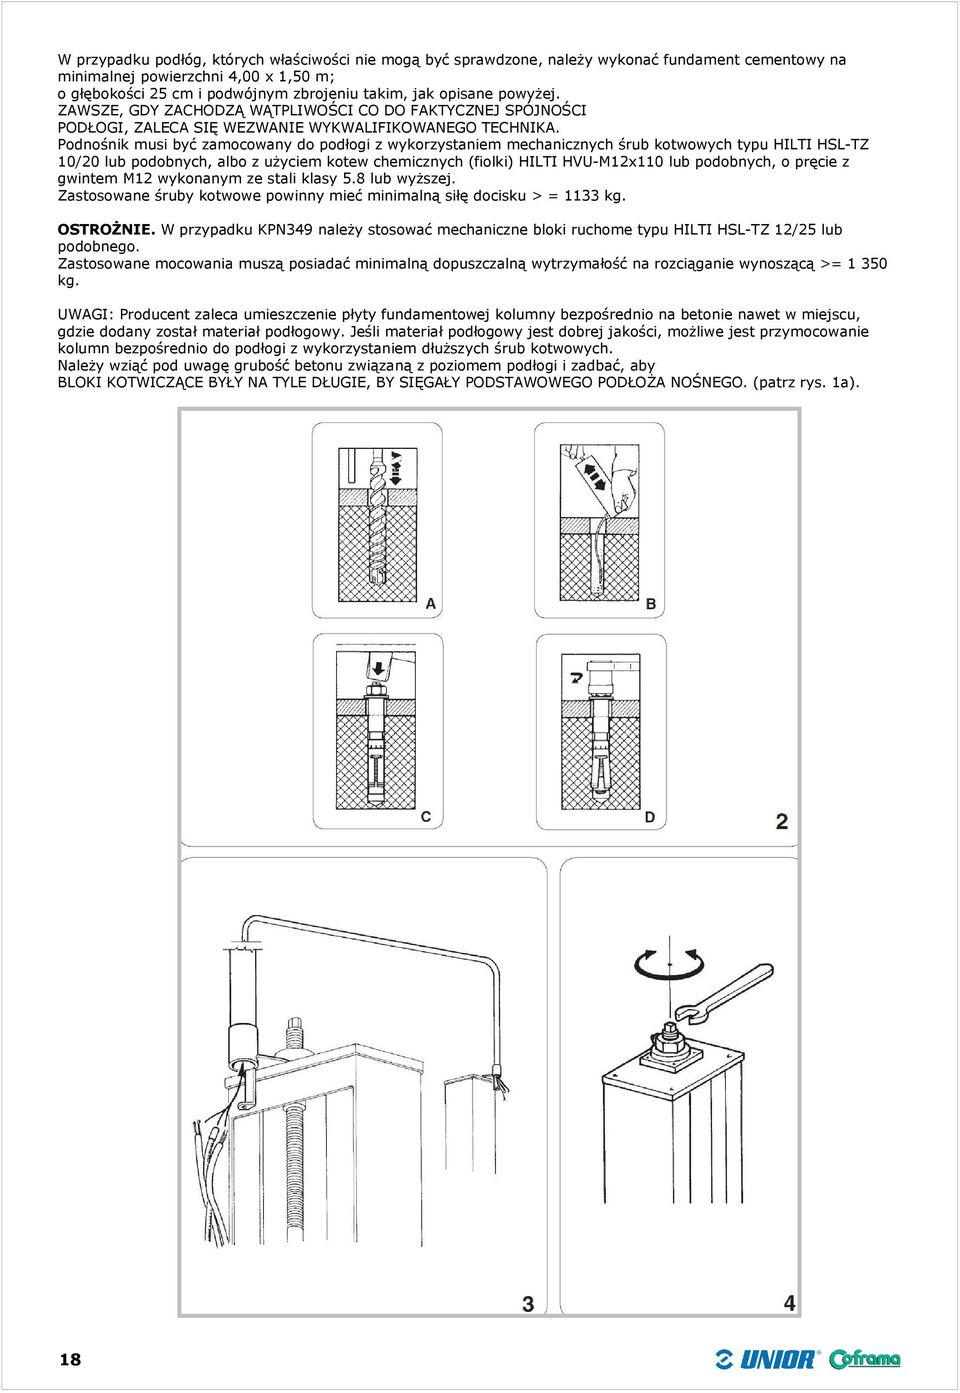 Podnośnik musi być zamocowany do podłogi z wykorzystaniem mechanicznych śrub kotwowych typu HILTI HSL-TZ 10/20 lub podobnych, albo z użyciem kotew chemicznych (fiolki) HILTI HVU-M12x110 lub